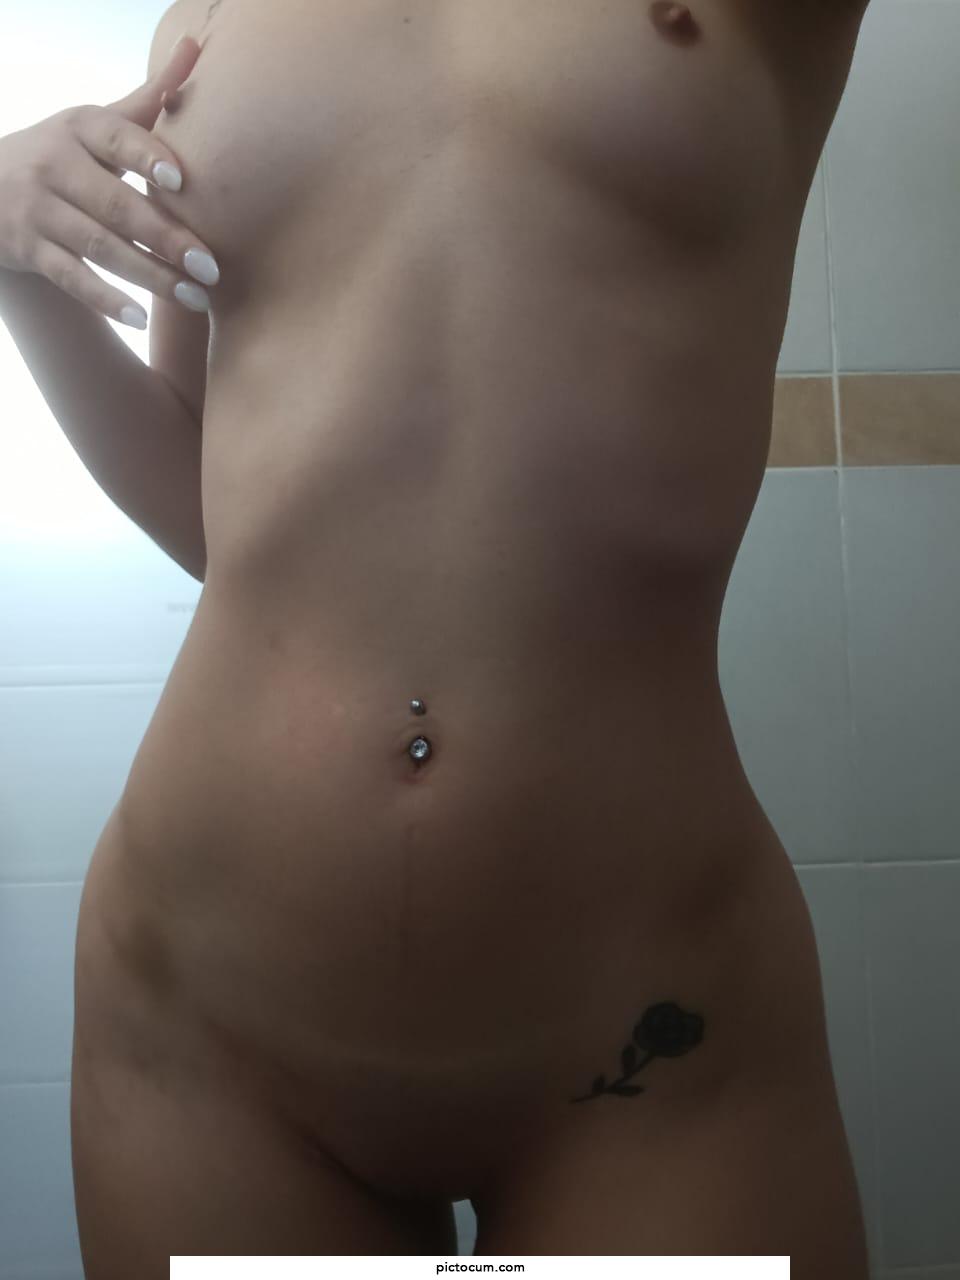 Do you consider small natural boobs sexy?